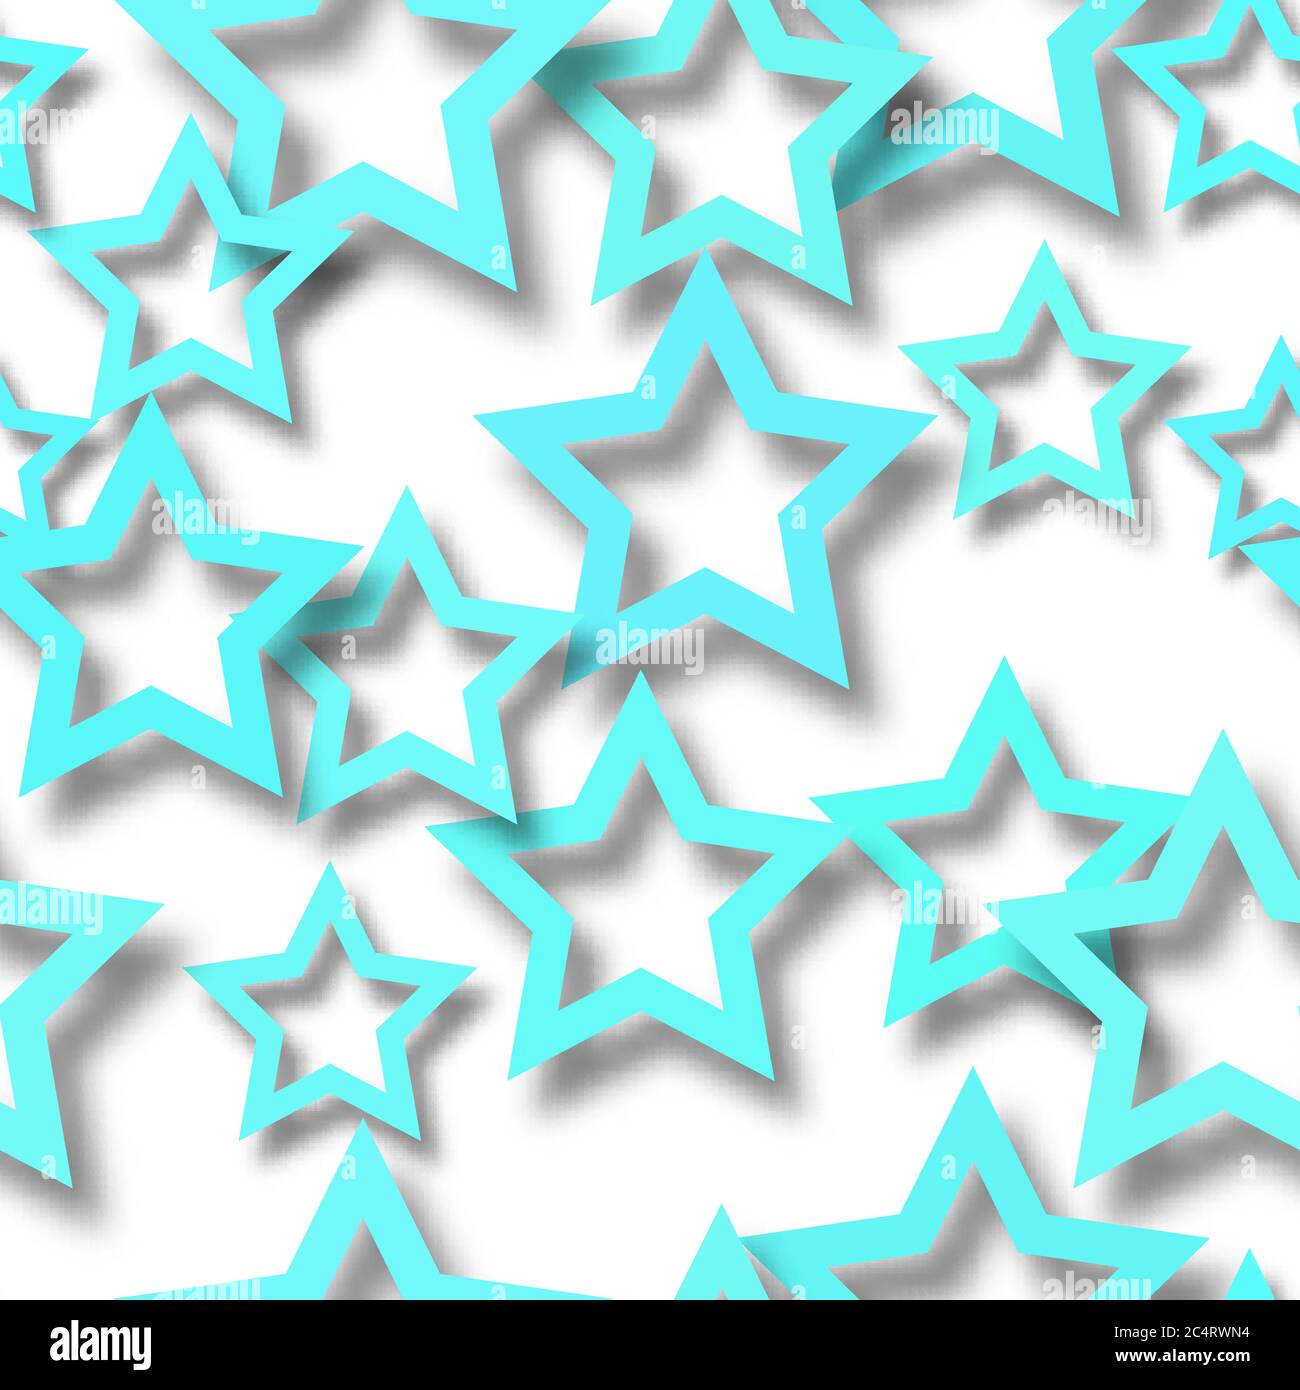 Motif abstrait sans couture d'étoiles bleu clair disposées aléatoirement avec des ombres douces sur fond blanc Illustration de Vecteur